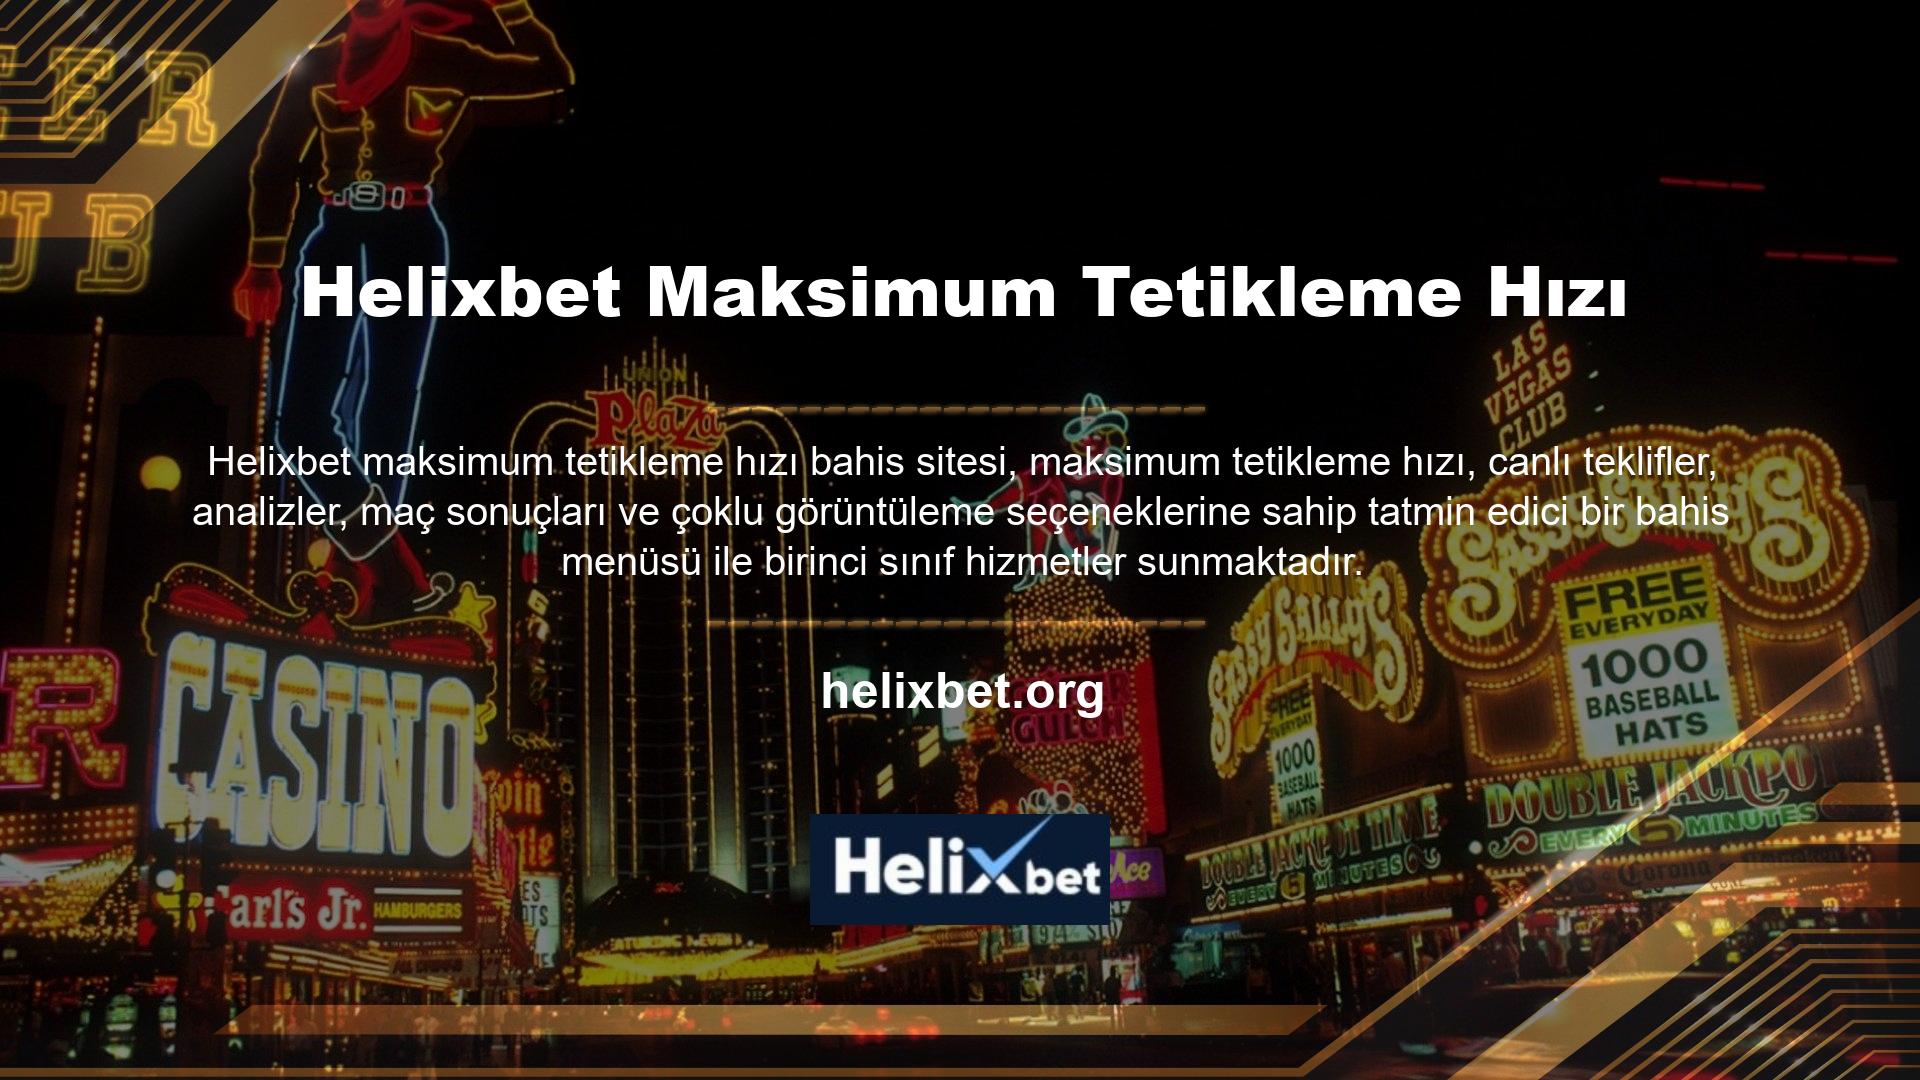 Helixbet casino sitesi yasa dışı casino siteleri kategorisine girmektedir ve Türk casino düzenlemeleri nedeniyle kapatılmıştır